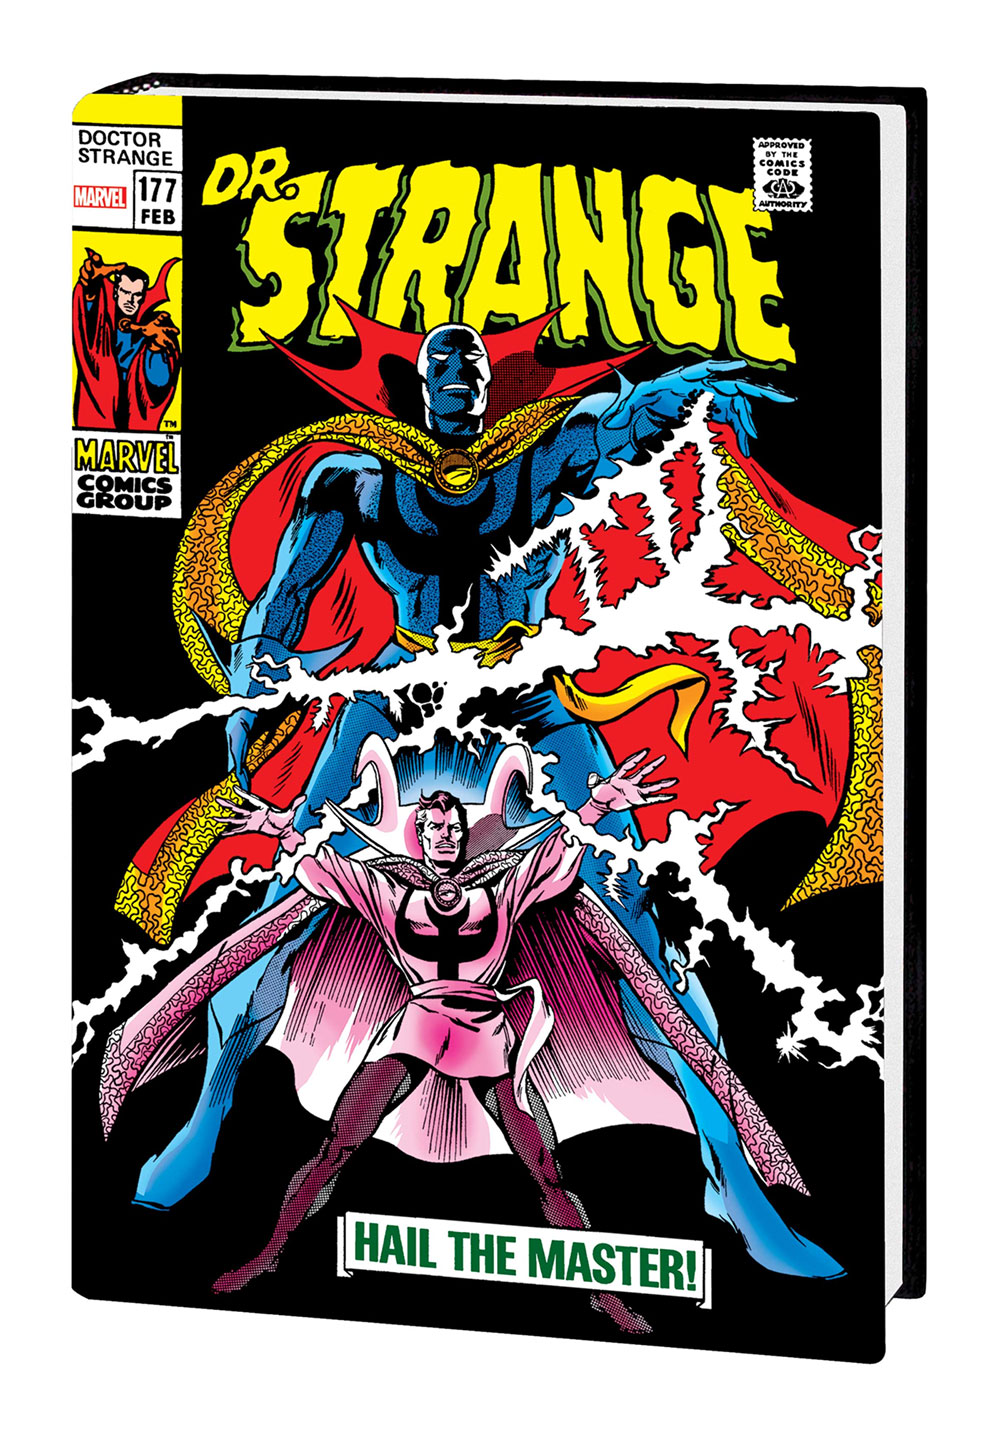 Doctor Strange Omnibus Hardcover Volume 2 Adkins Direct Market Variant